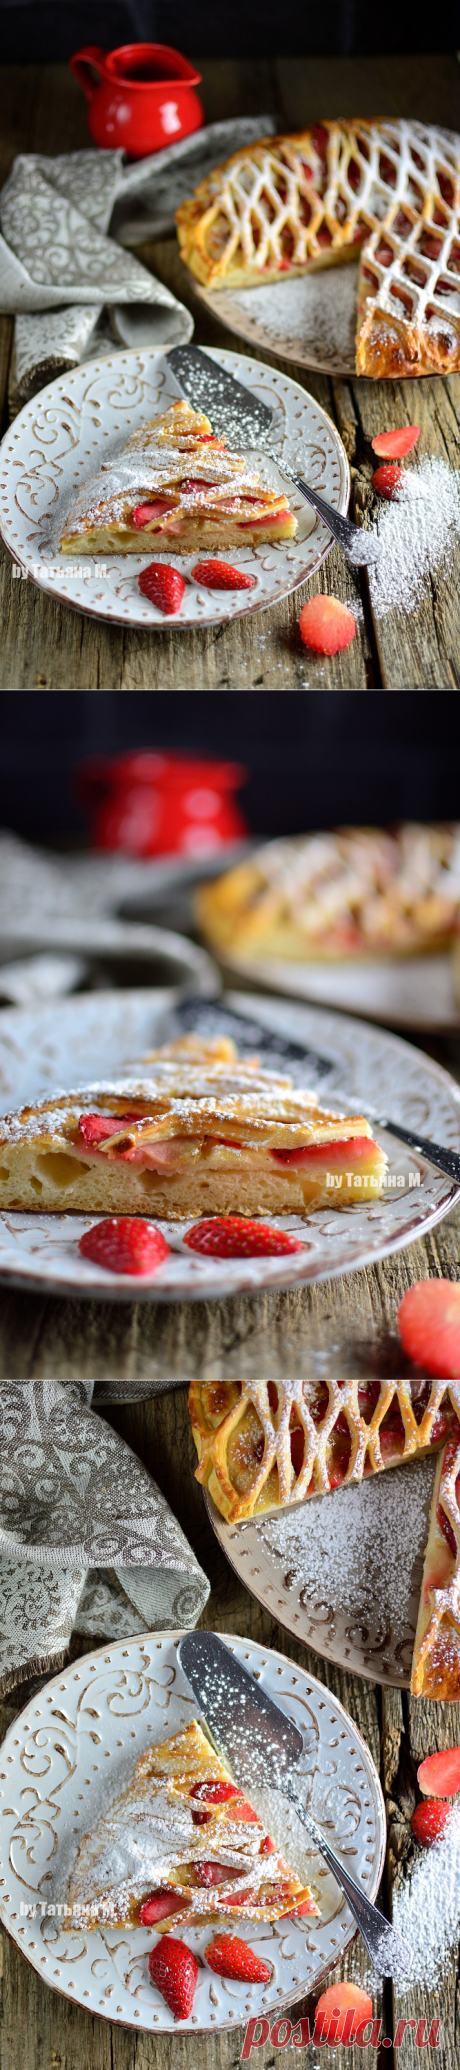 Пирог с клубникой | Кулинарный блог Татьяны М.